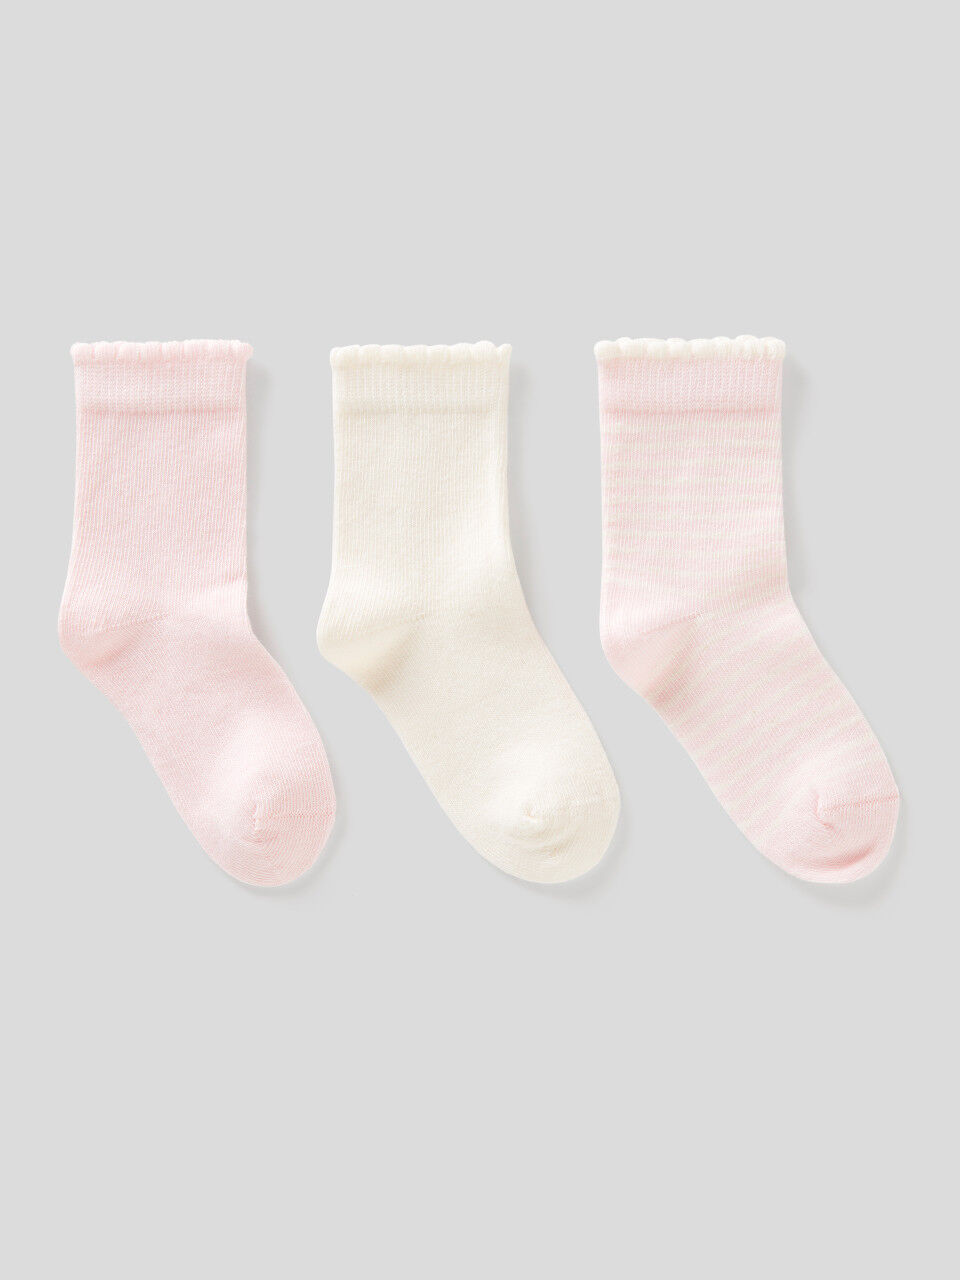 Sock set in pink tones